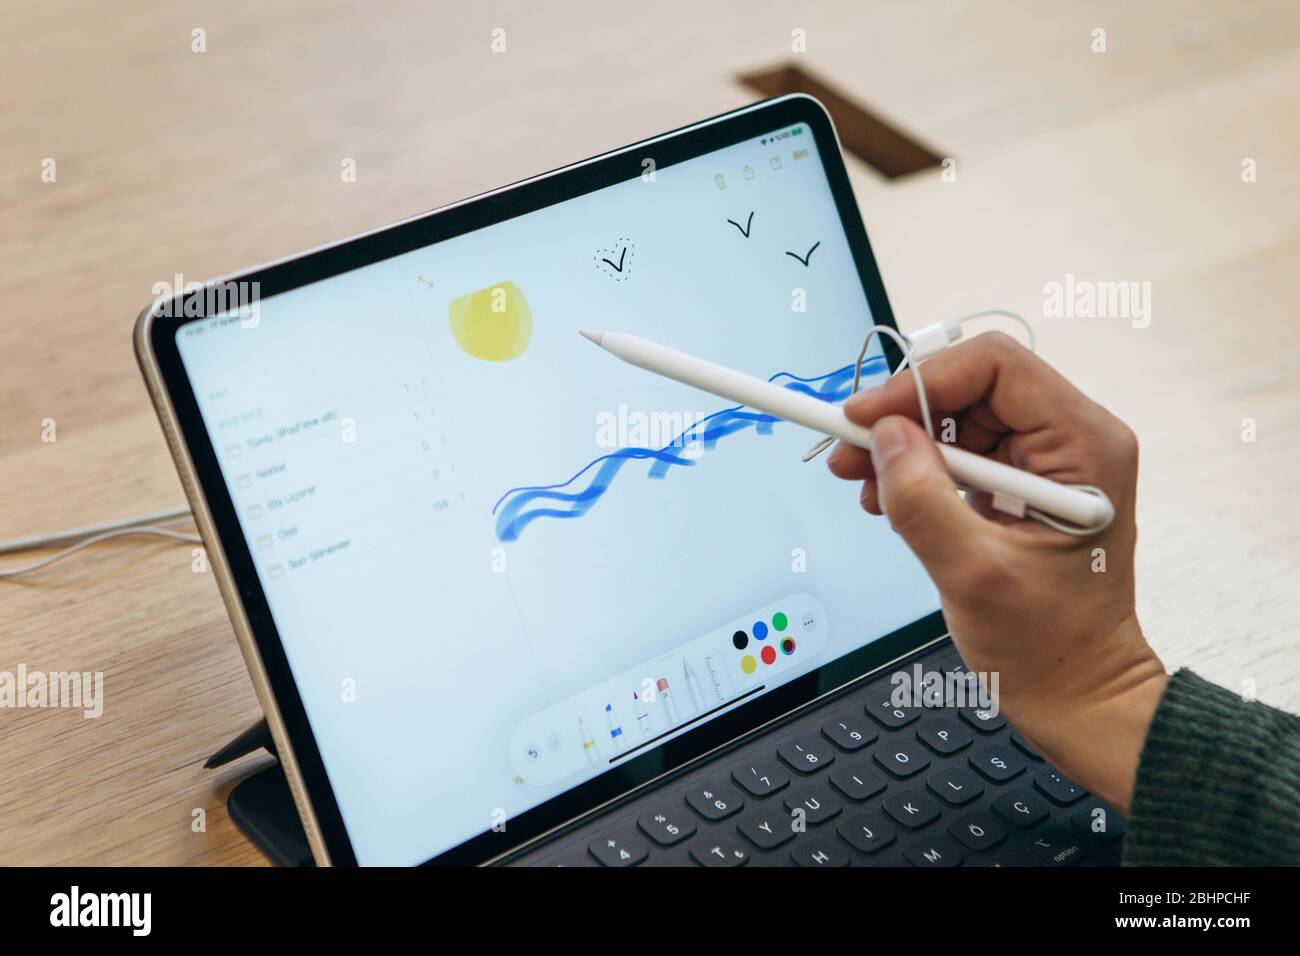 Turquie, Istanbul, 17 décembre 2019: Vente Nouvelle tablette APPLE iPad  dans le magasin officiel Apple. L'acheteur tente de dessiner un dessin  simple avec le stylet sur l'écran du gadget Photo Stock -